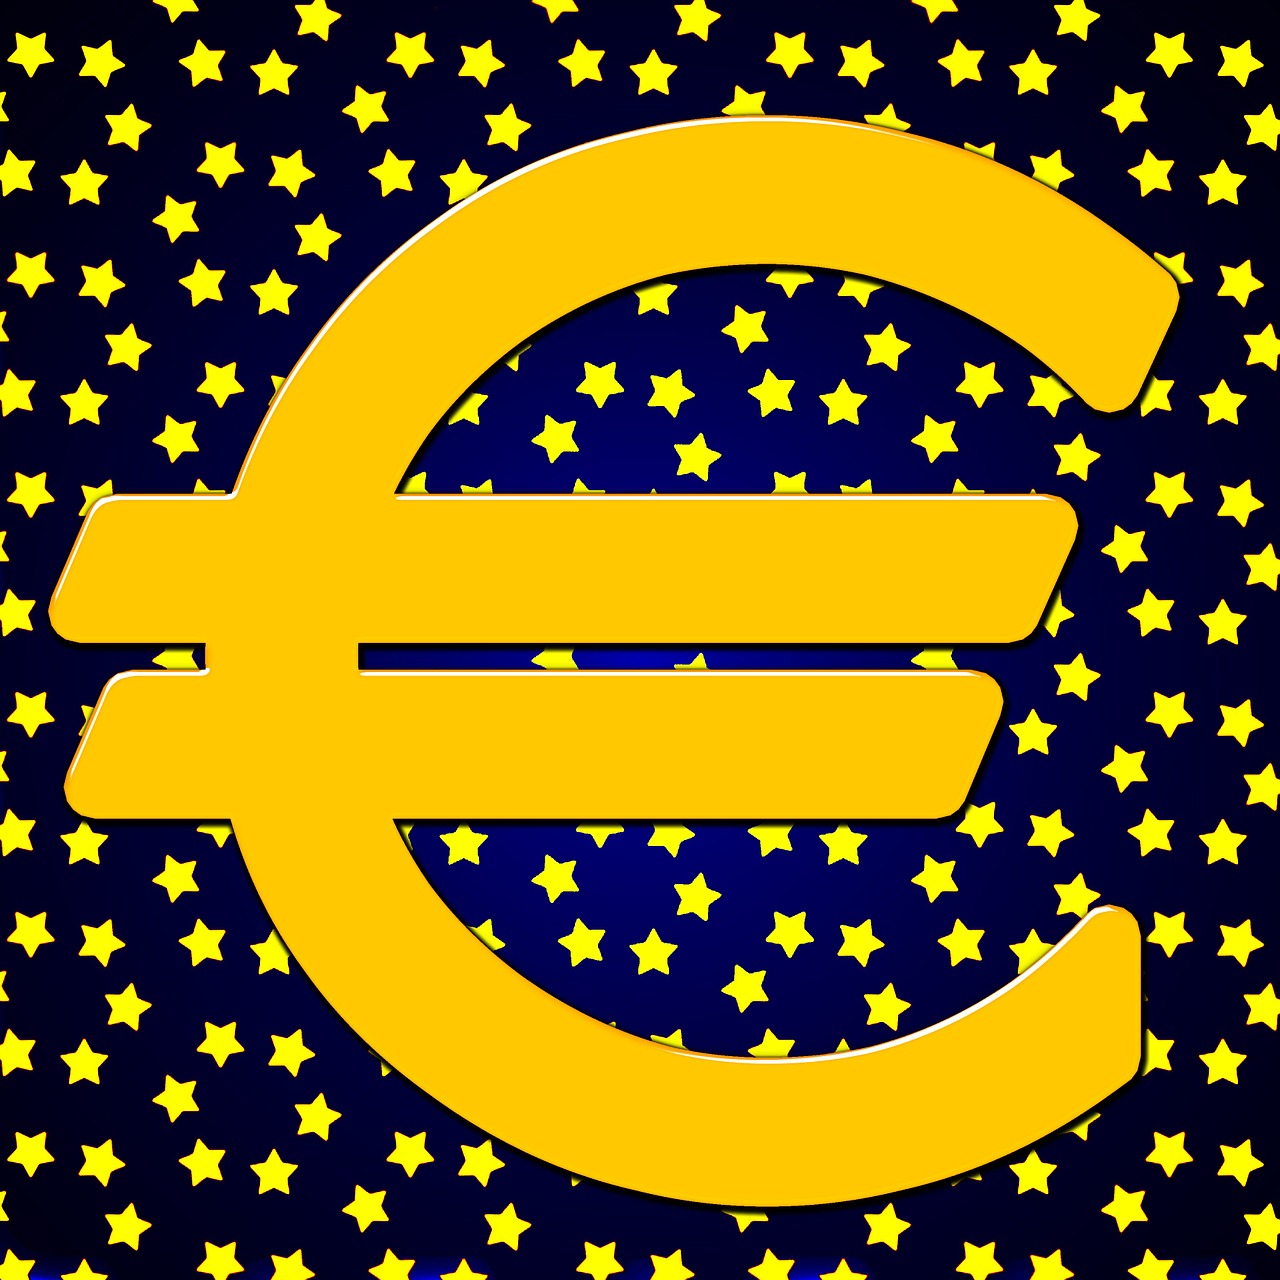 Europa, Žvaigždė, Europietis, Plėtra, Lūkesčiai, Eu, Euras, Personažai, Pinigai, Simbolis